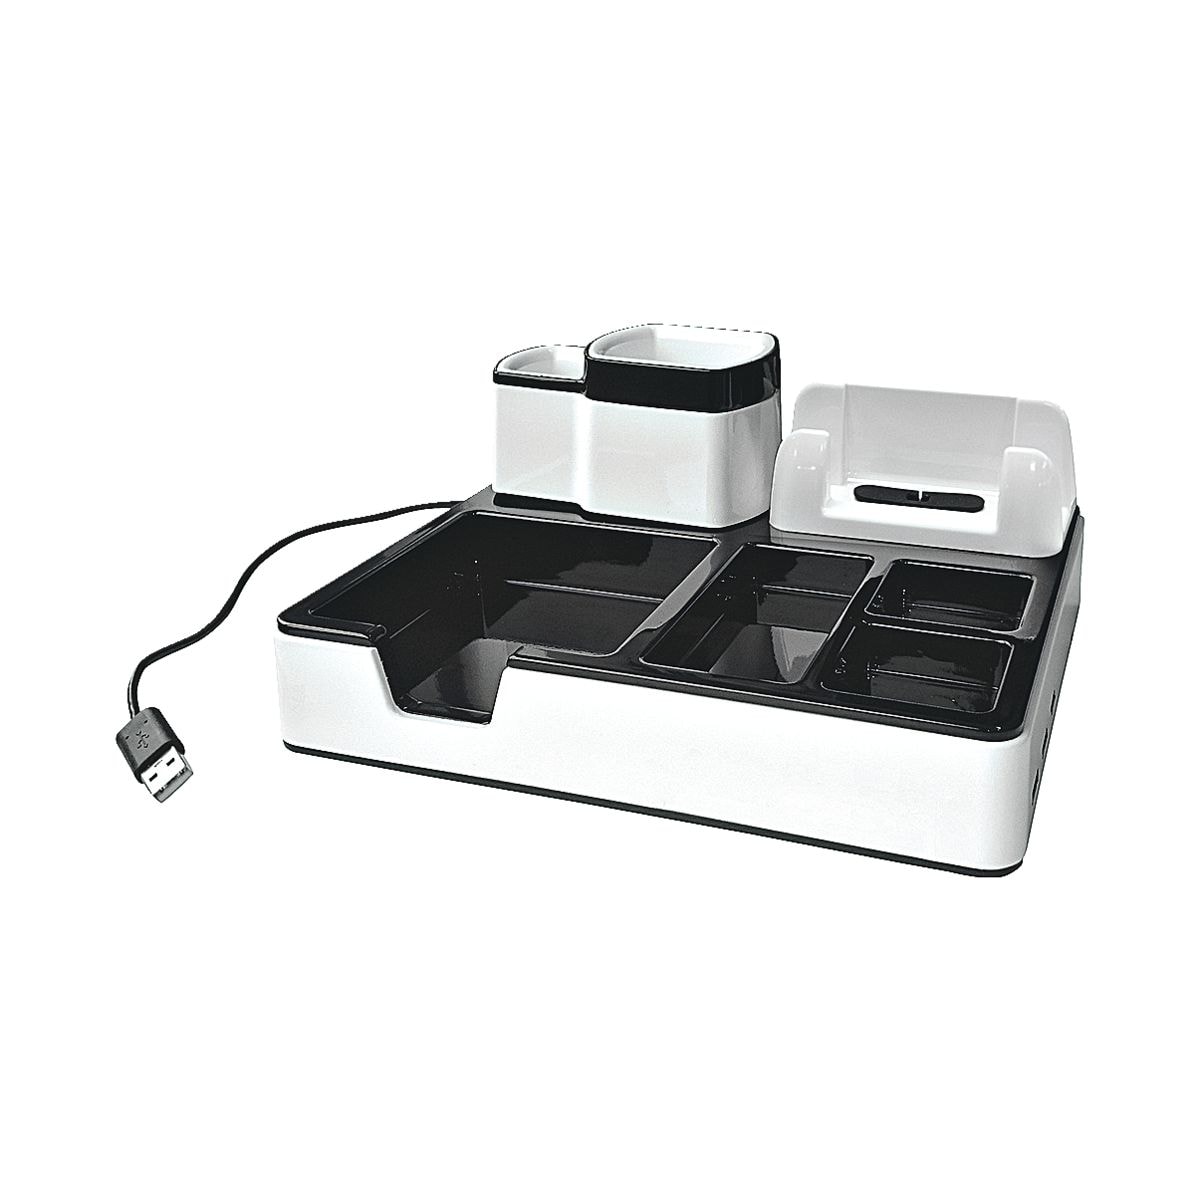 Monolith Schreibtisch-Organizer mit USB-Anschlüssen - Bei OTTO Office  günstig kaufen.